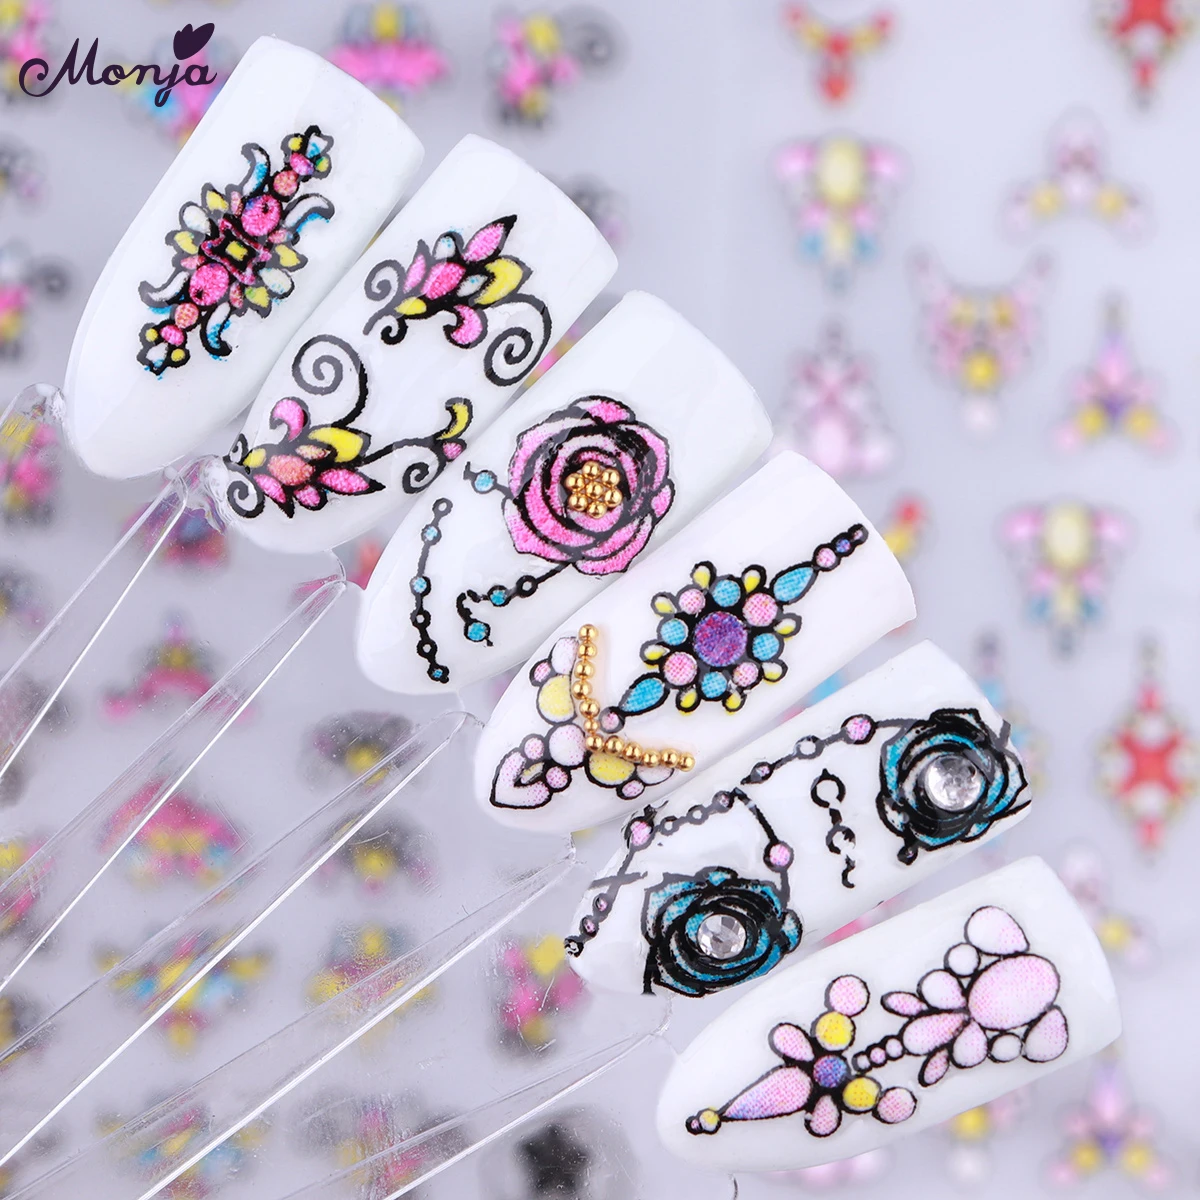 Monja дизайн ногтей роза цветок ожерелье шаблон самоклеющиеся наклейки 3D тисненые Кончики ногтей DIY маникюр наклейки украшения